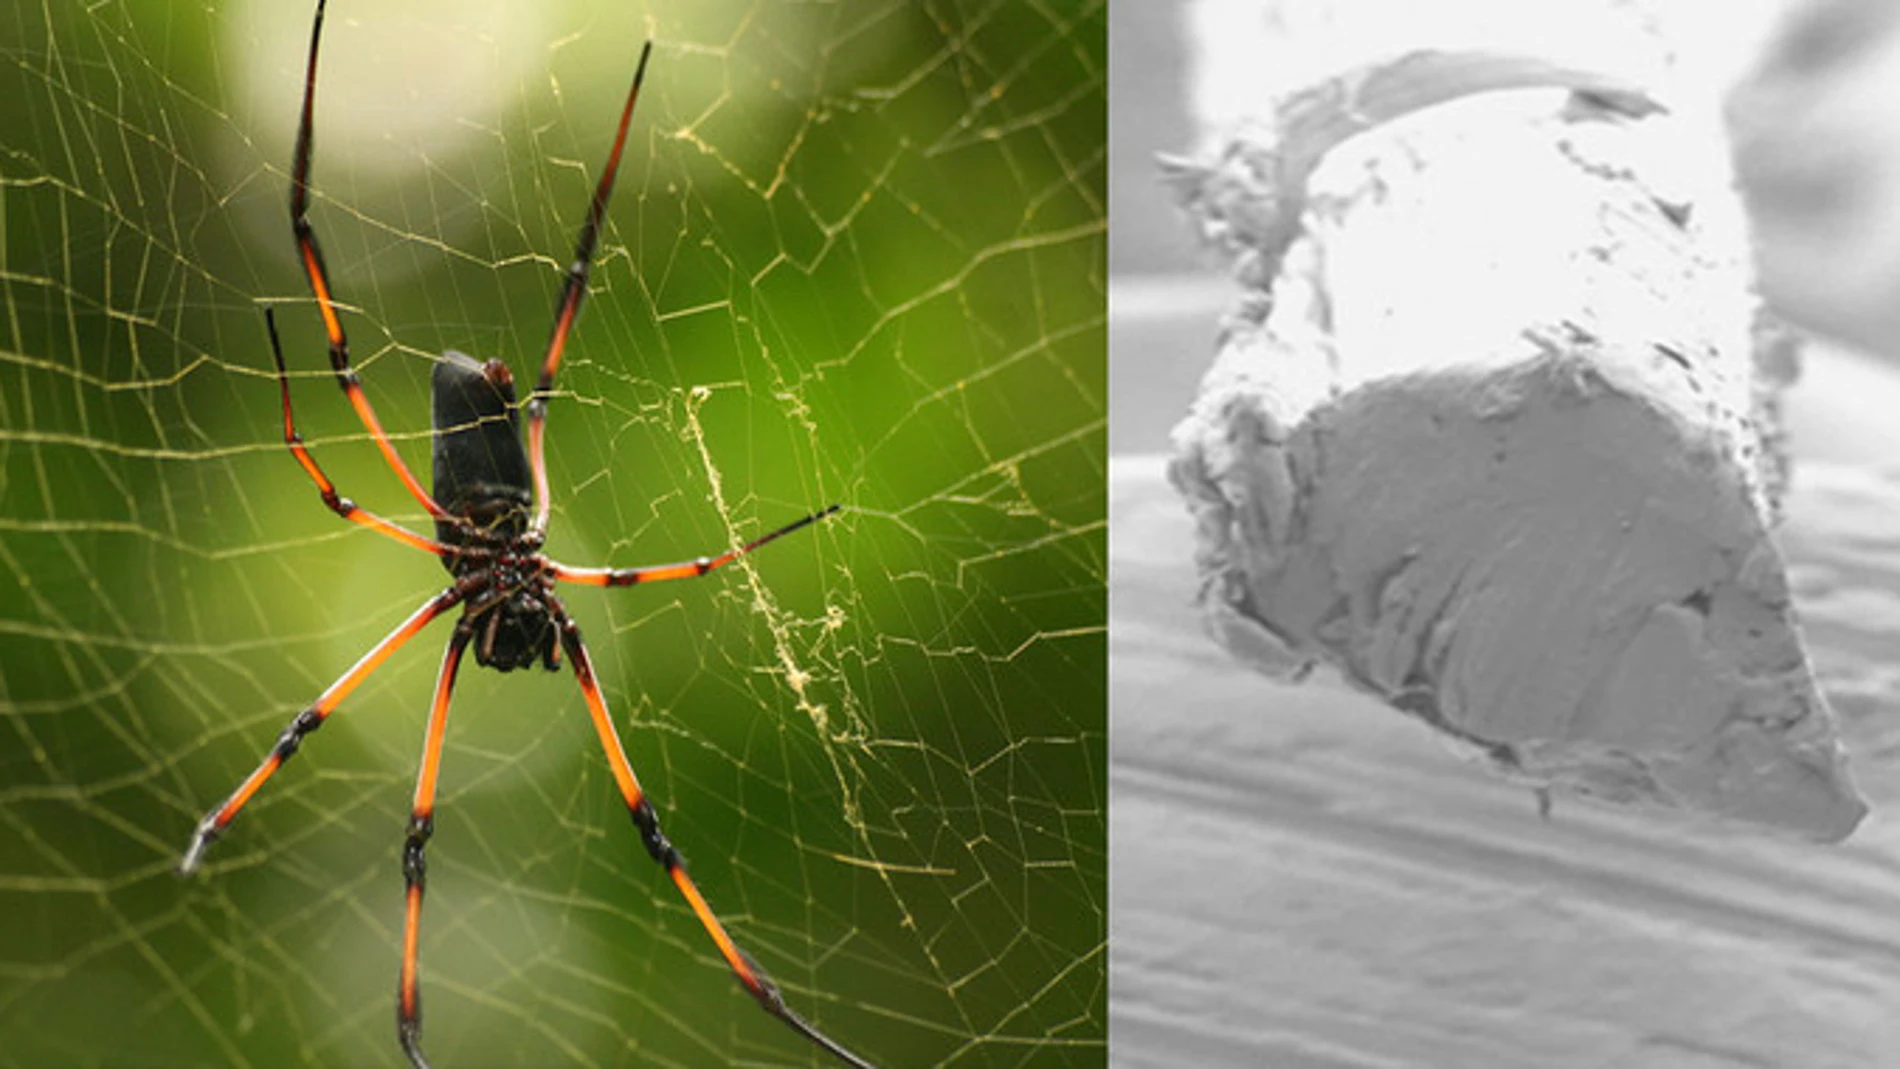 Araña de la especie Nephila inaurata y foto de microscopía electrónica de barrido donde se muestra una sección de la ‘hijuela’ o hebra de su glándula